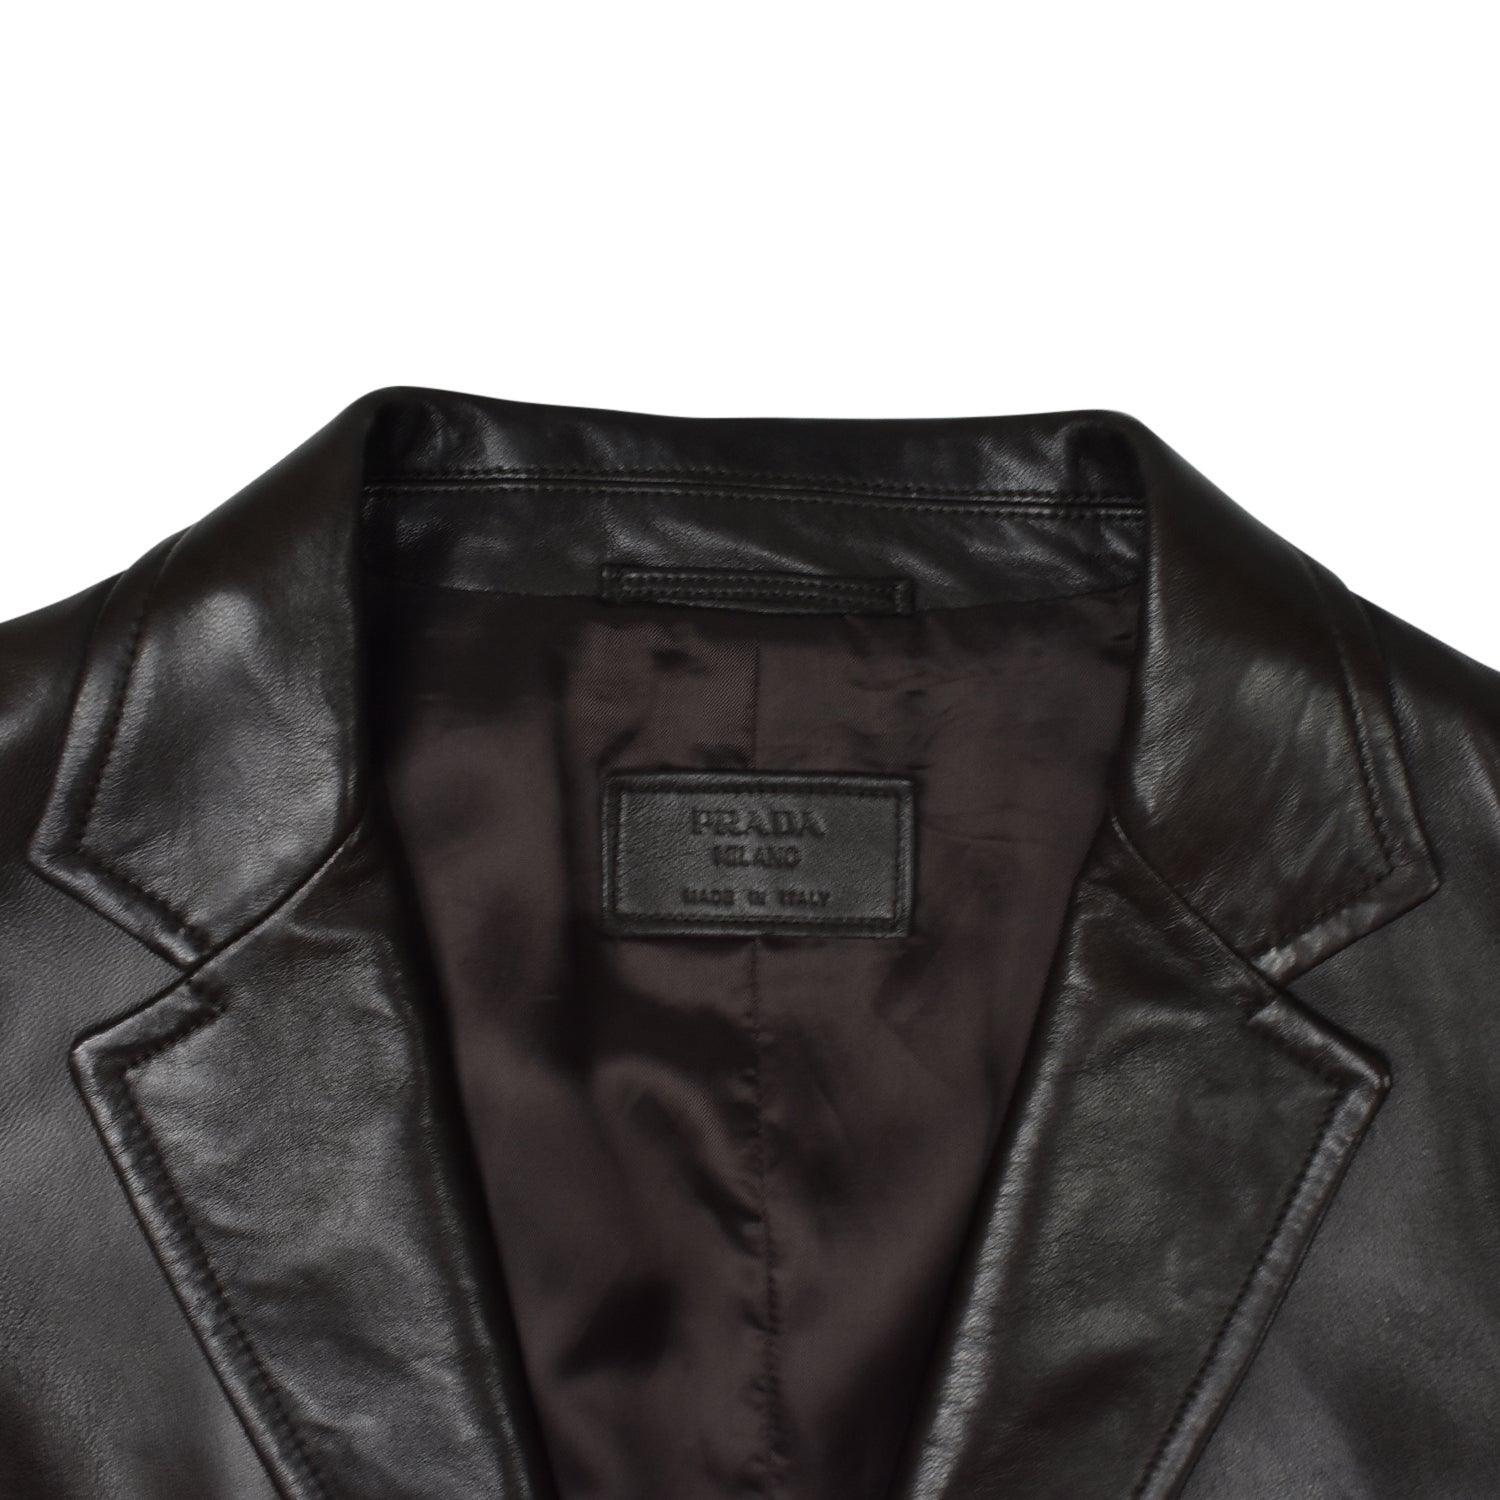 Prada Leather Blazer - Men's 50 - Fashionably Yours